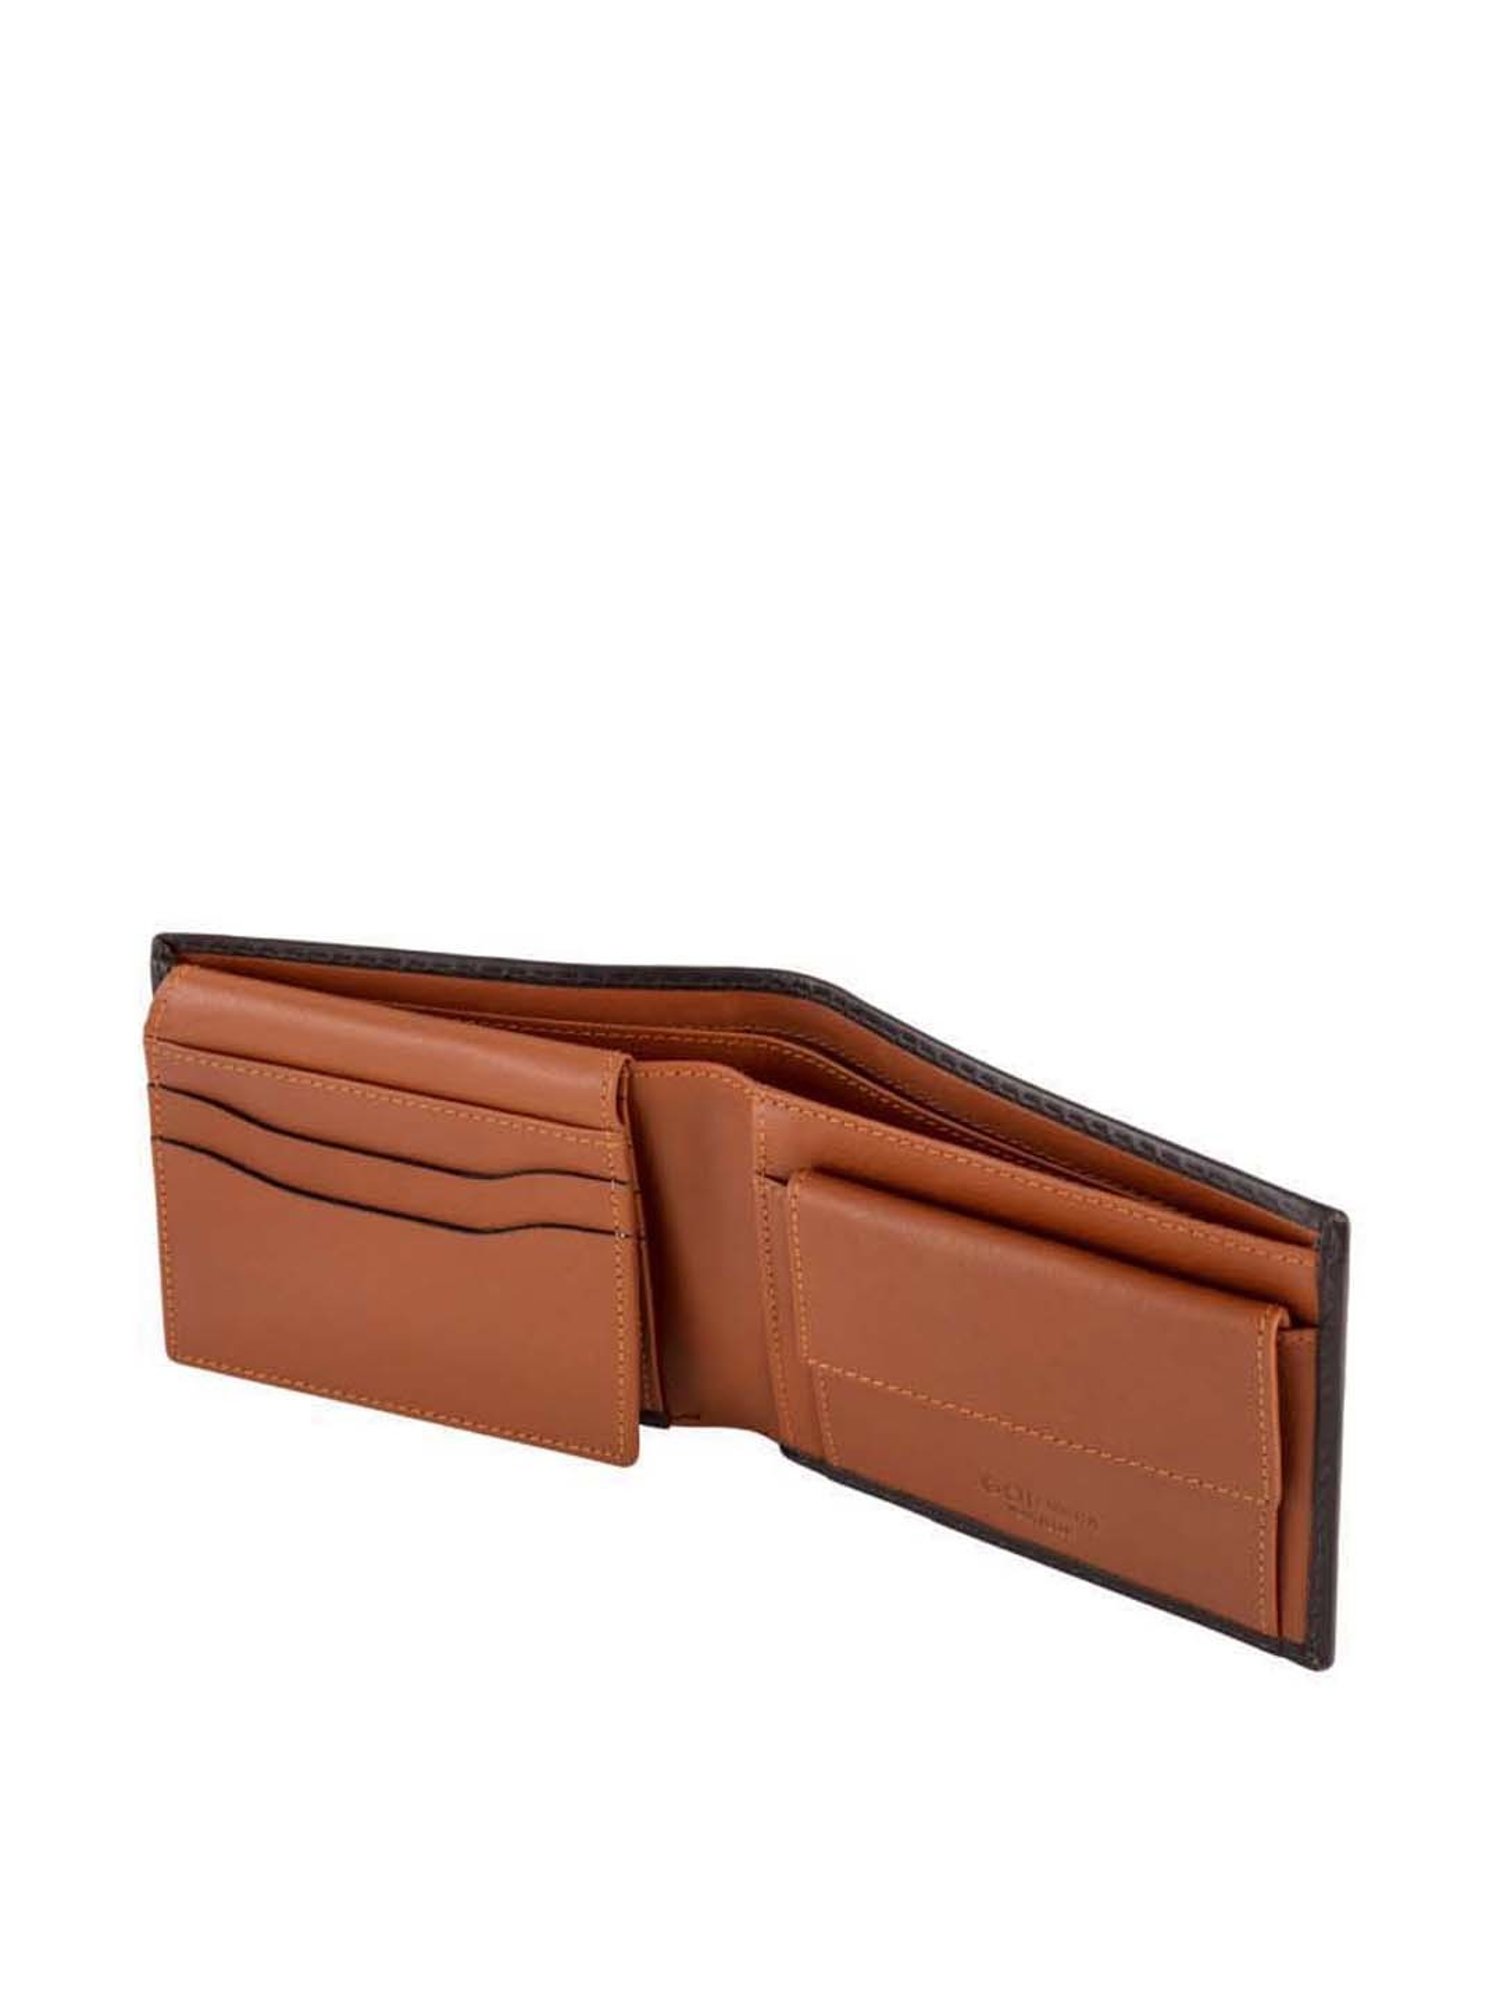 CARPISA Brown Bi-Fold Women Wallet: Buy CARPISA Brown Bi-Fold